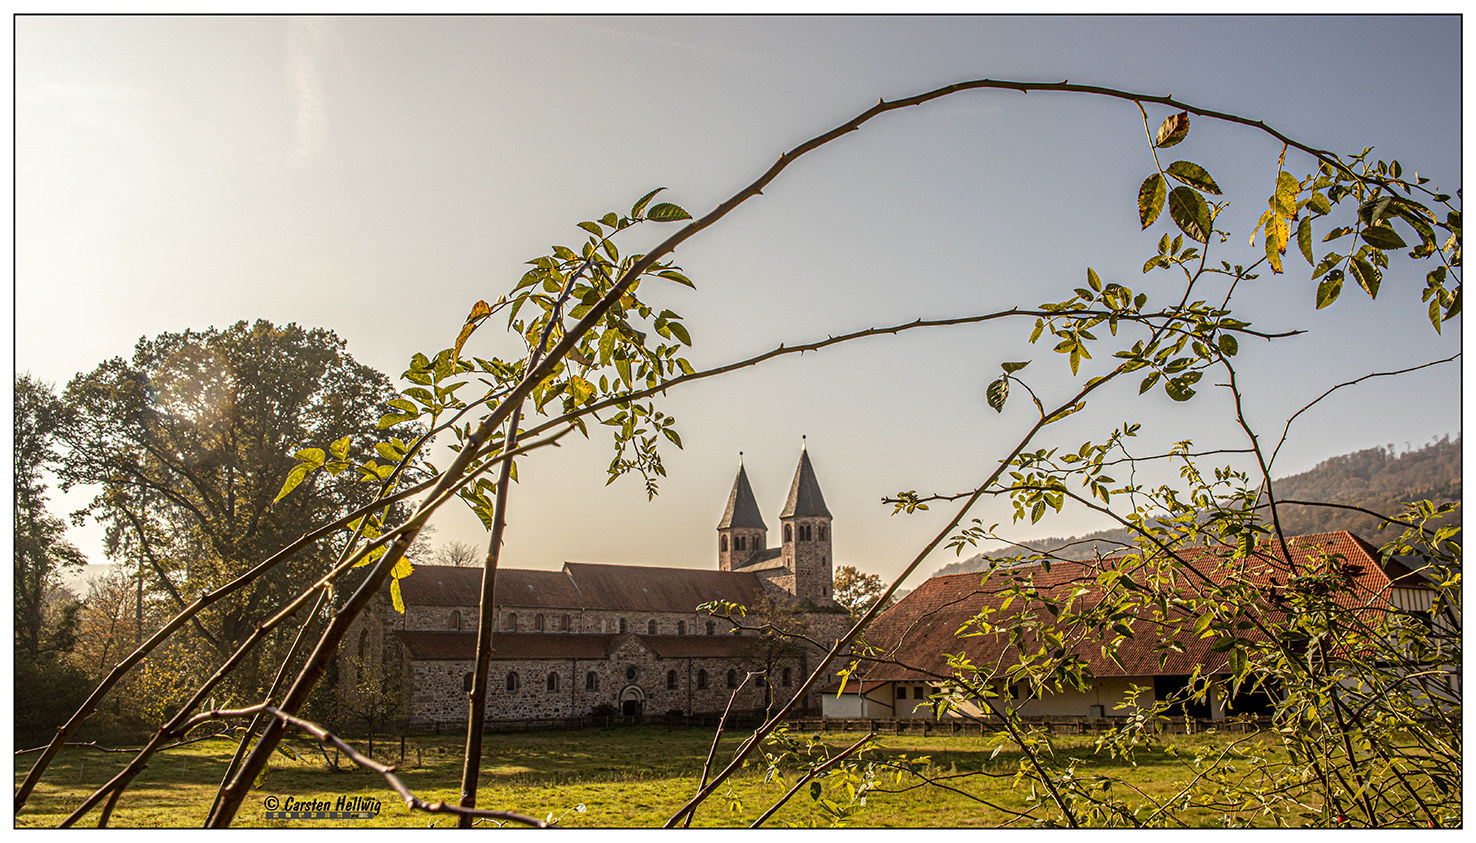 Kloster Bursfelde